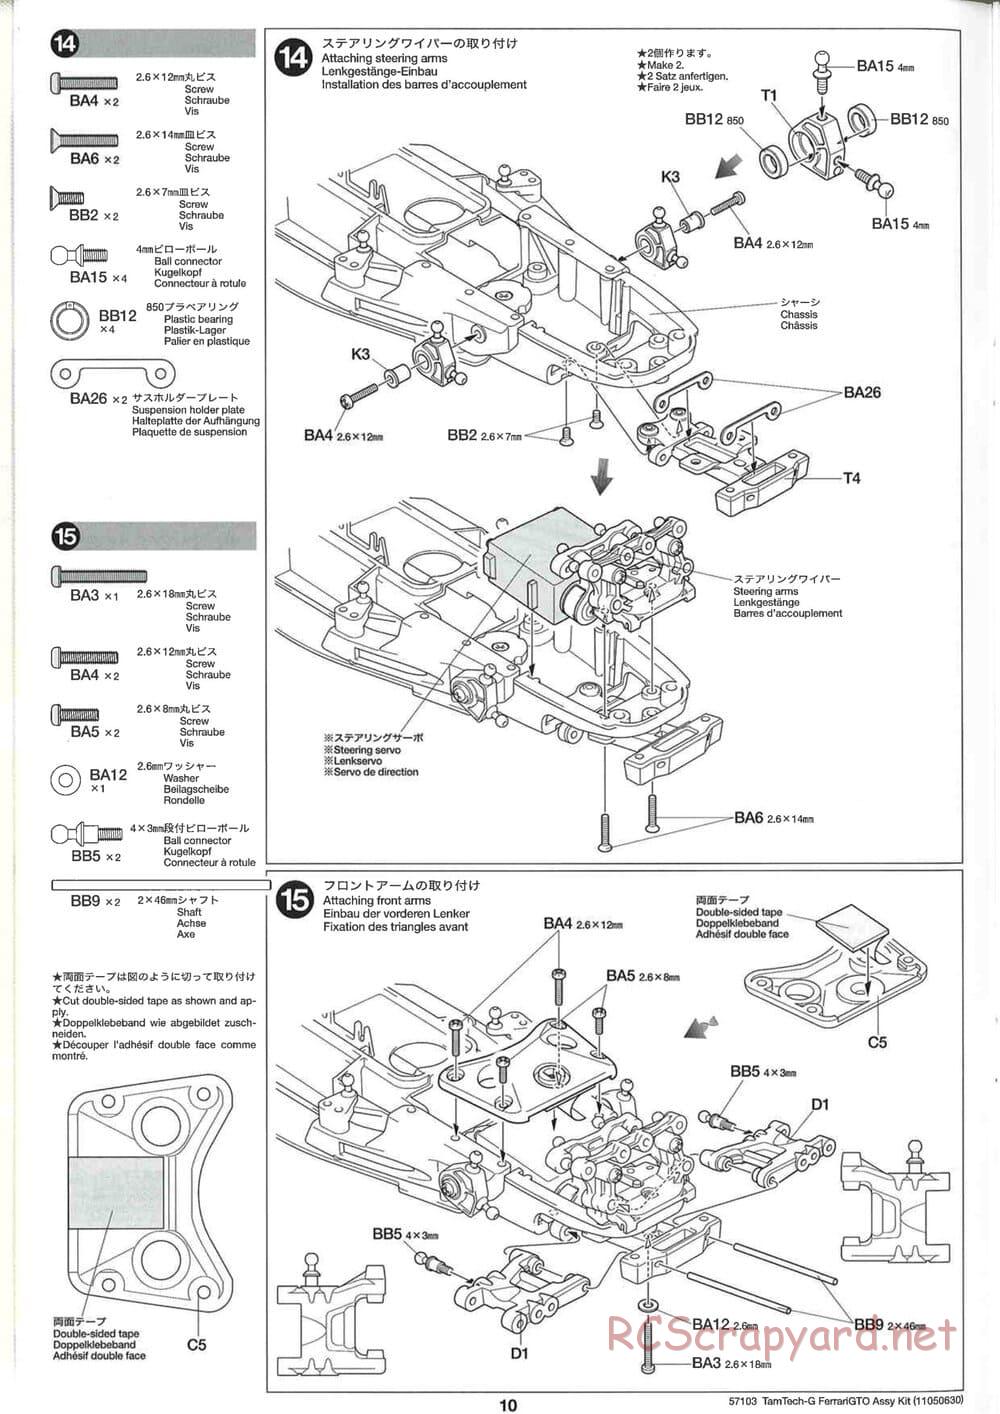 Tamiya - Ferrari 288 GTO - GT-01 Chassis - Manual - Page 10